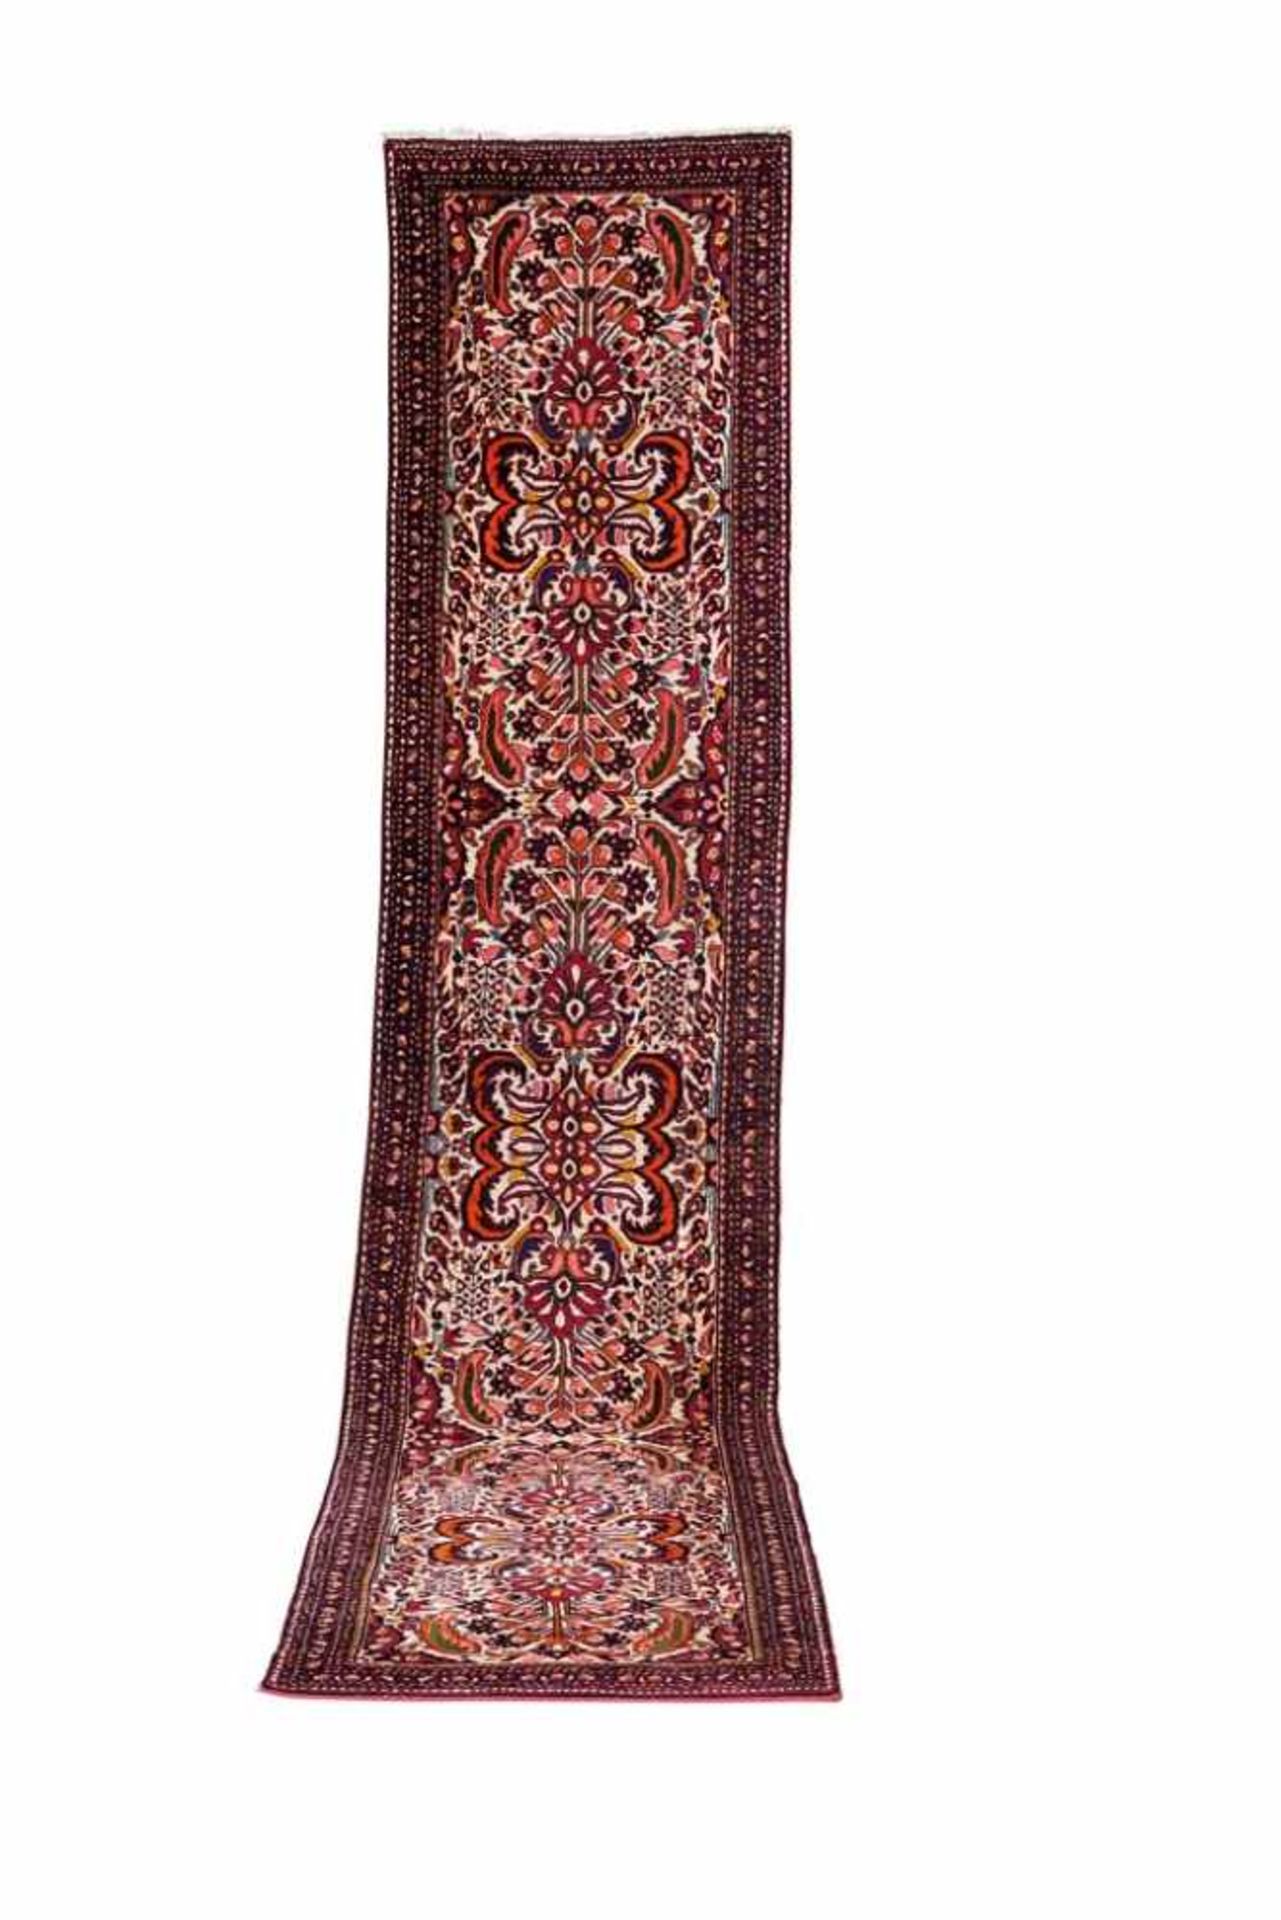 Tafresh. Persien, um 1970. 403 x 82 cm